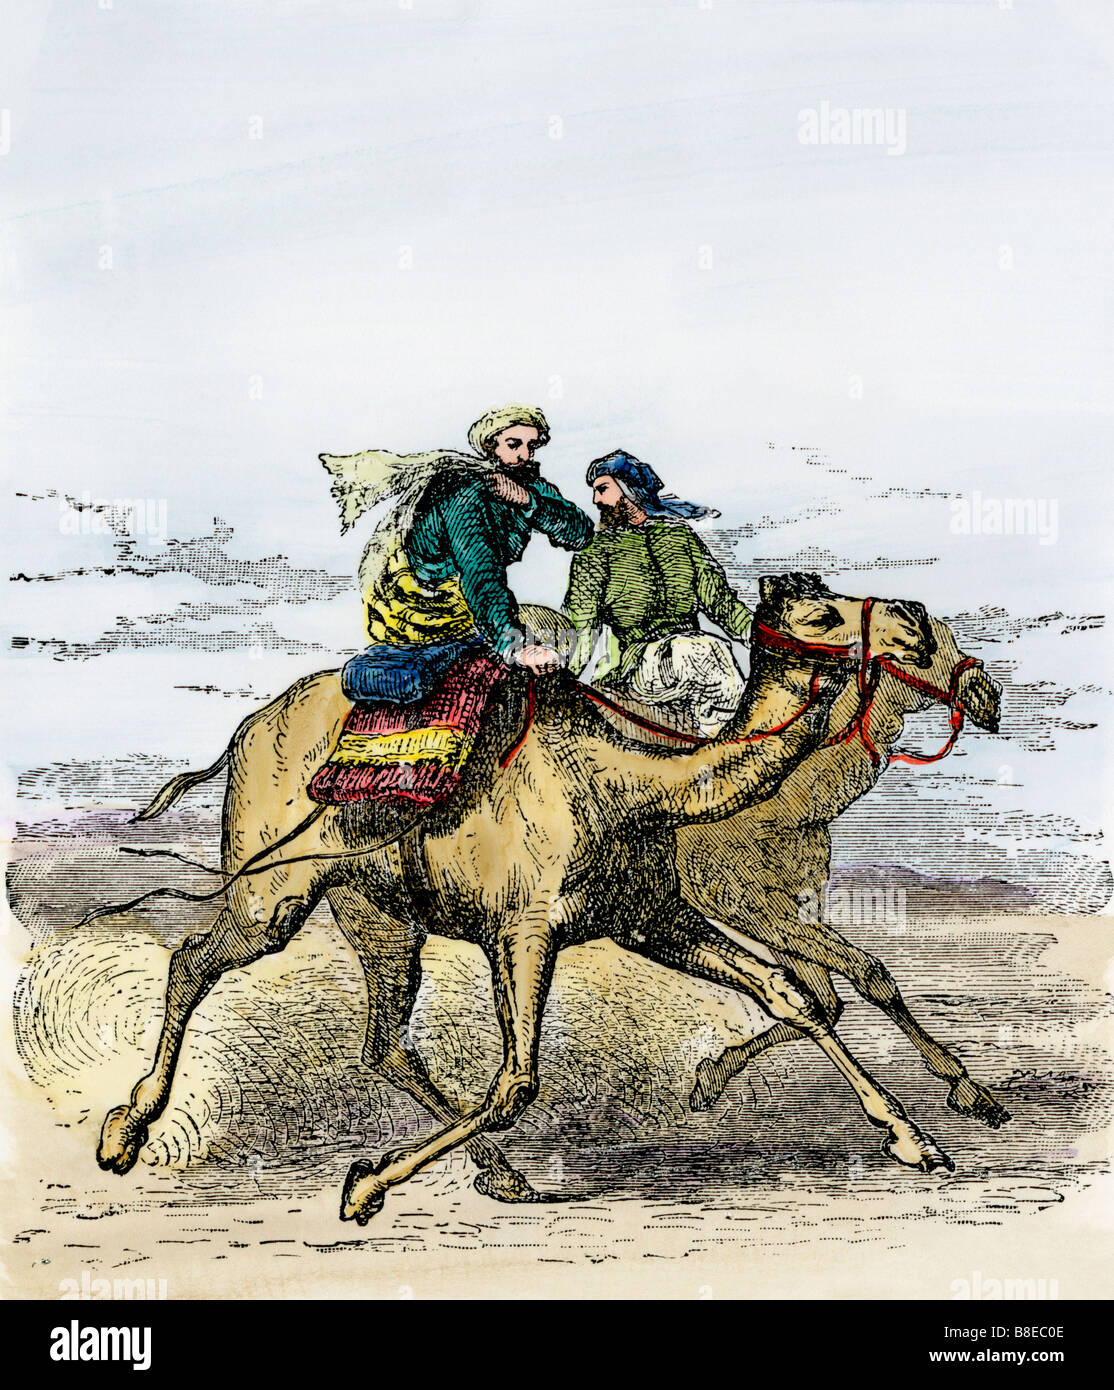 La Hégira: Muhammad viajar a Medina para establecer Islam 622 AD. Xilografía coloreada a mano Foto de stock